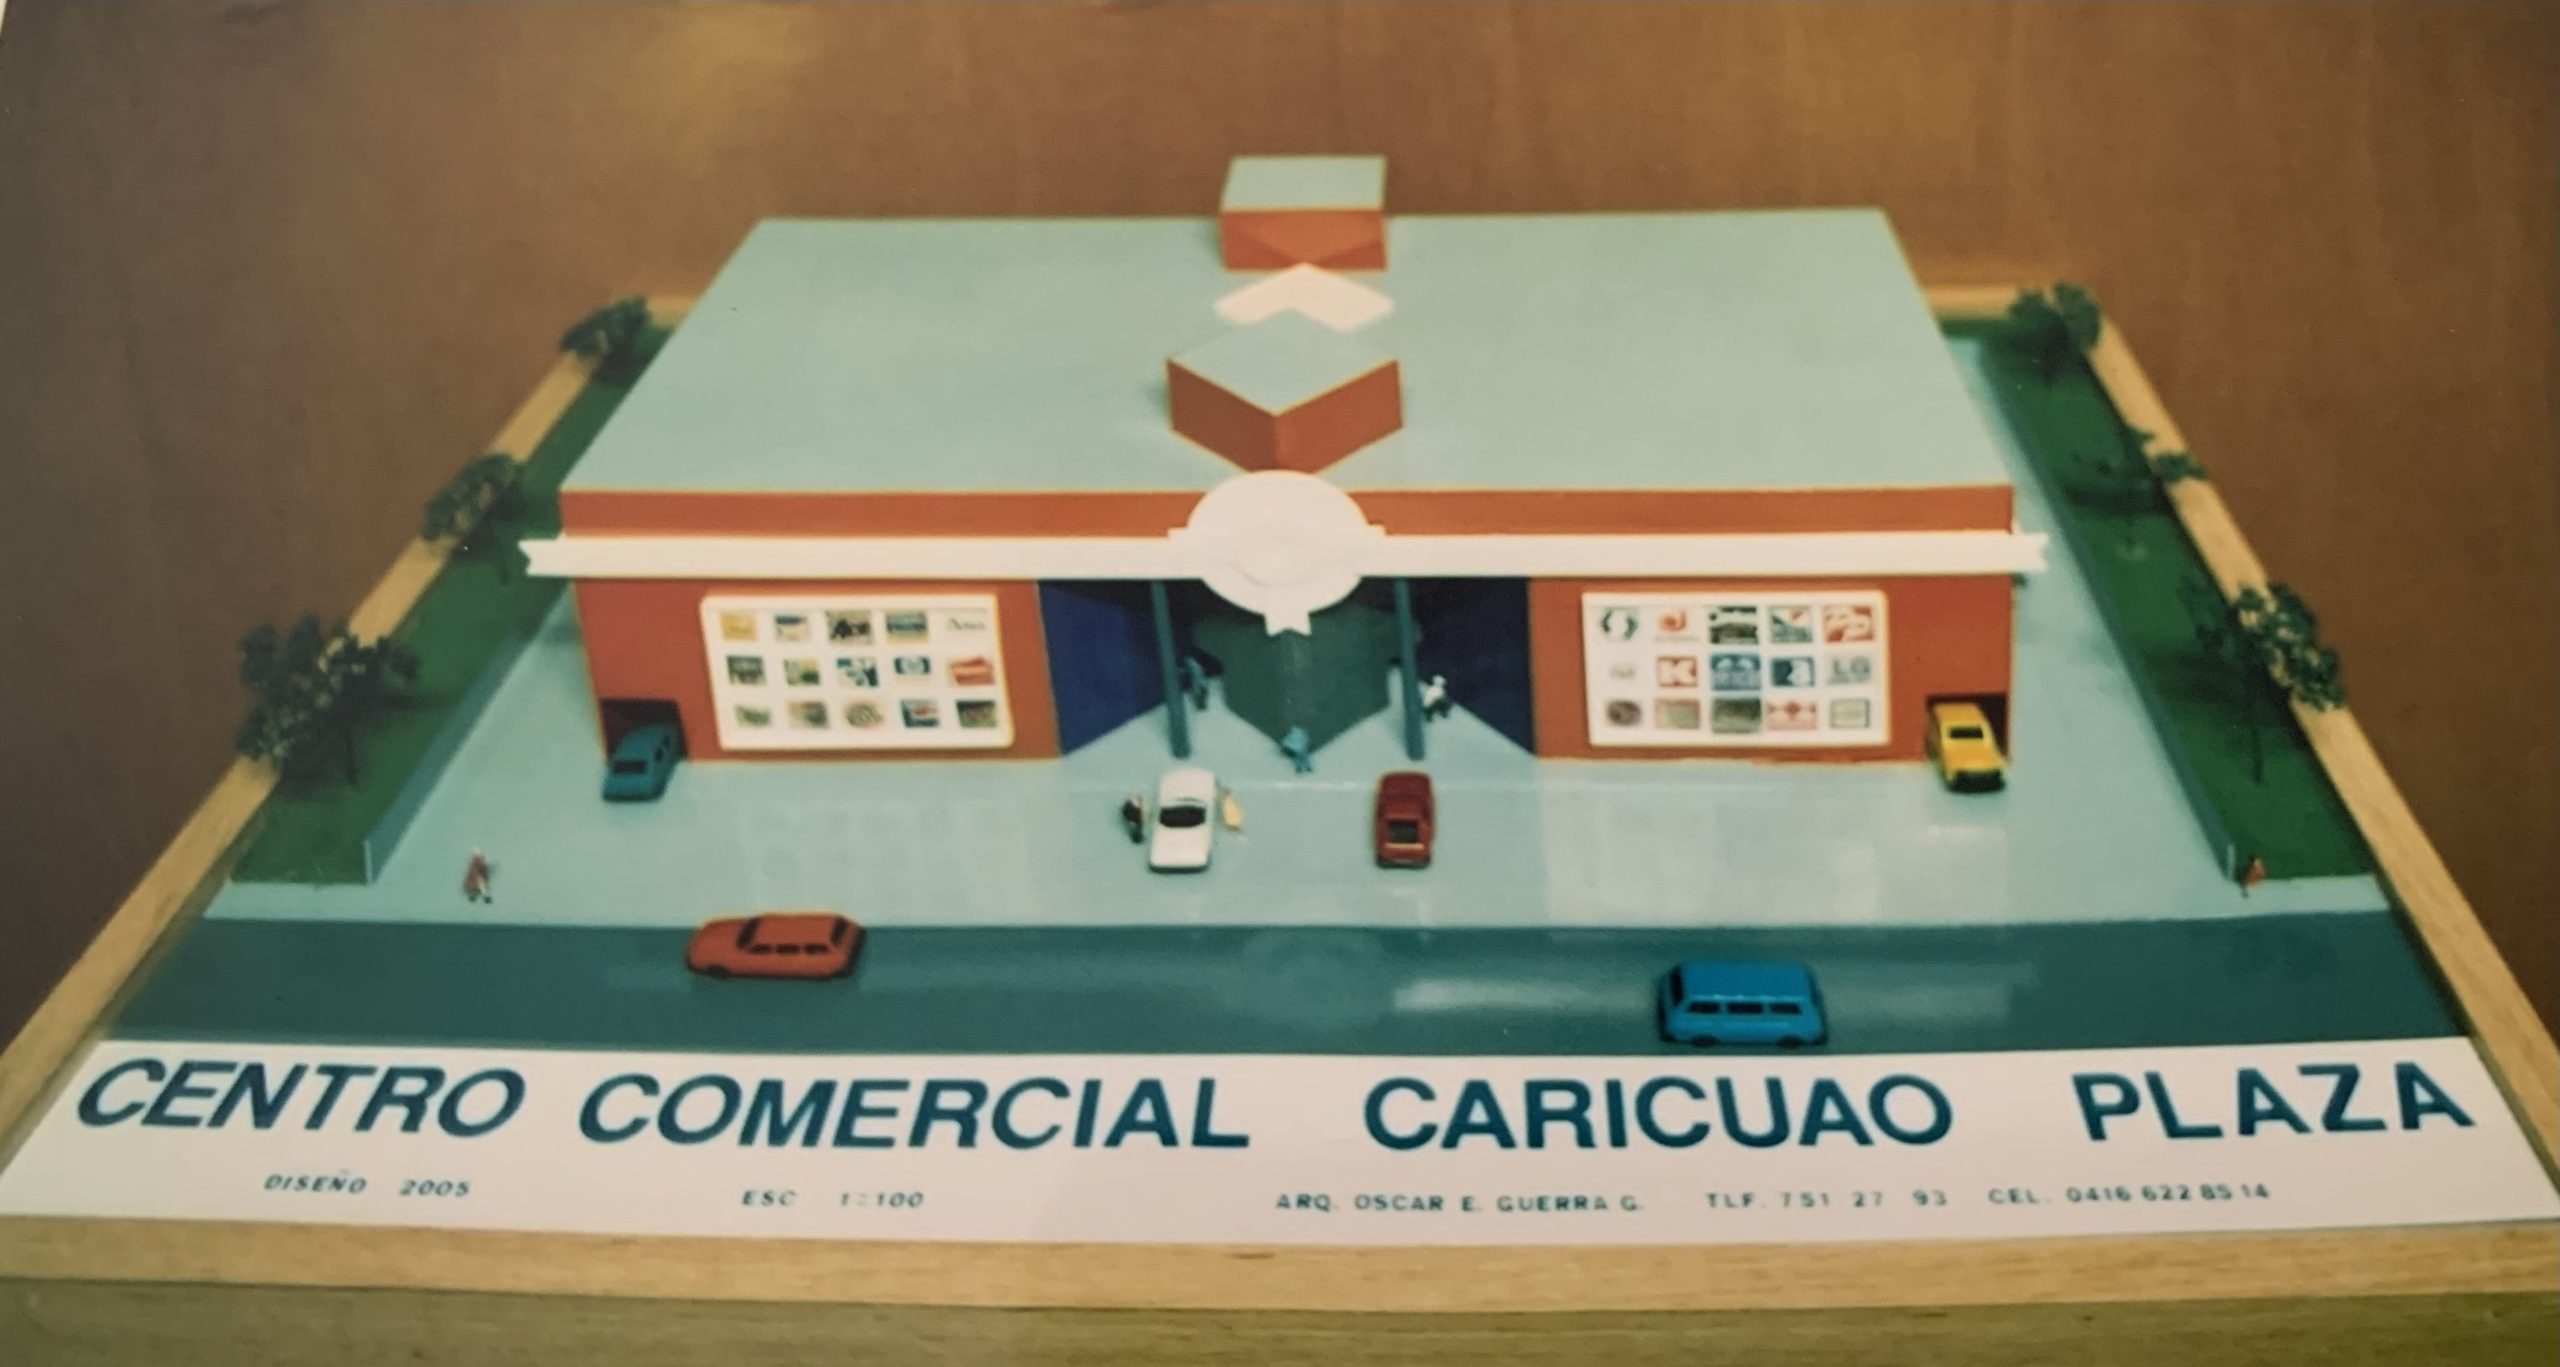 CENTRO COMERCIAL CARICUAO PLAZA